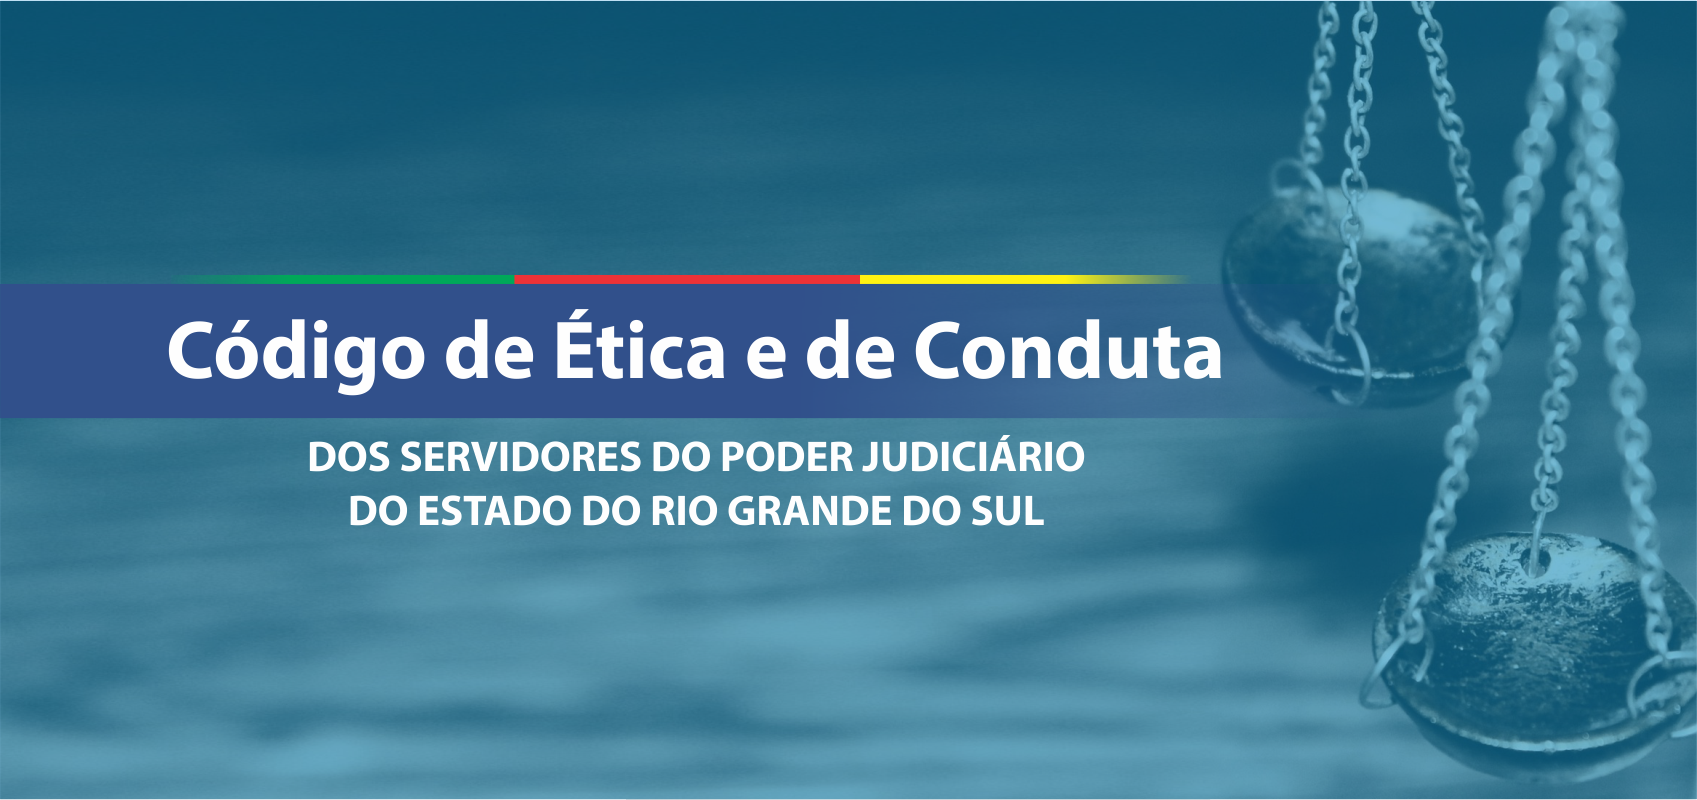 Código de Ética e de Conduta dos Servidores do Poder Judiciário do Estado do Rio Grande do Sul